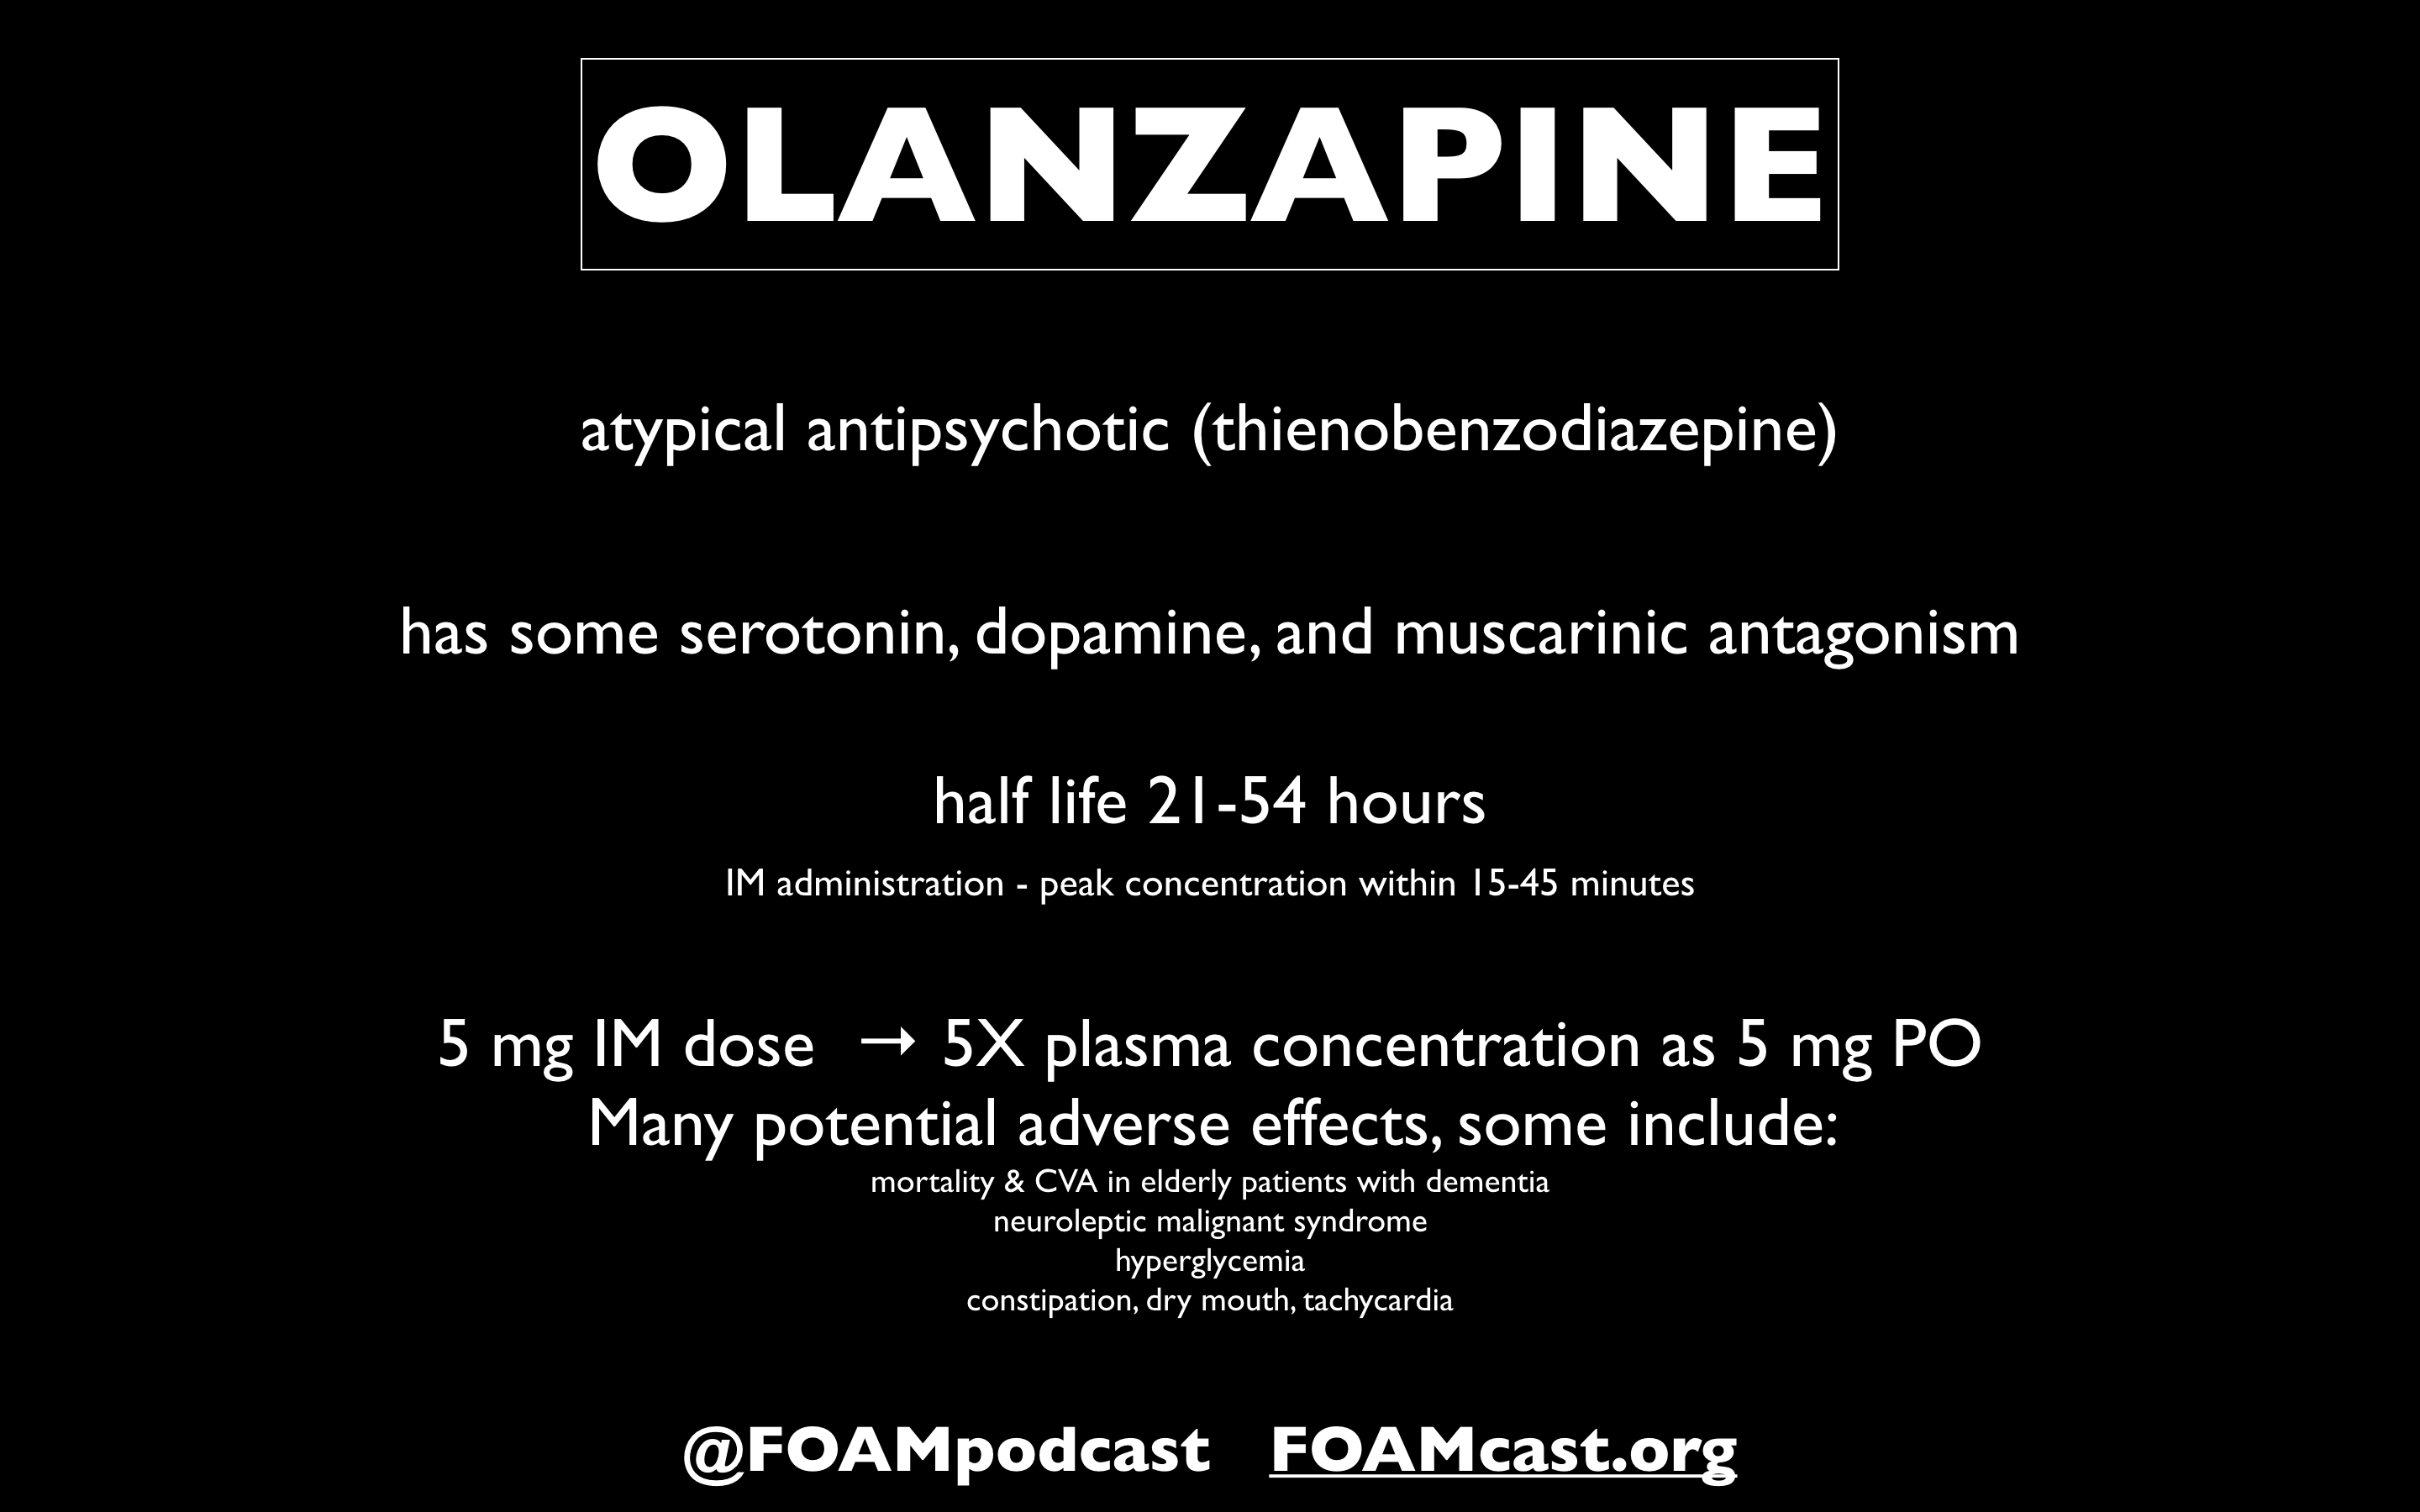 Is Zyprexa a Benzodiazepine?